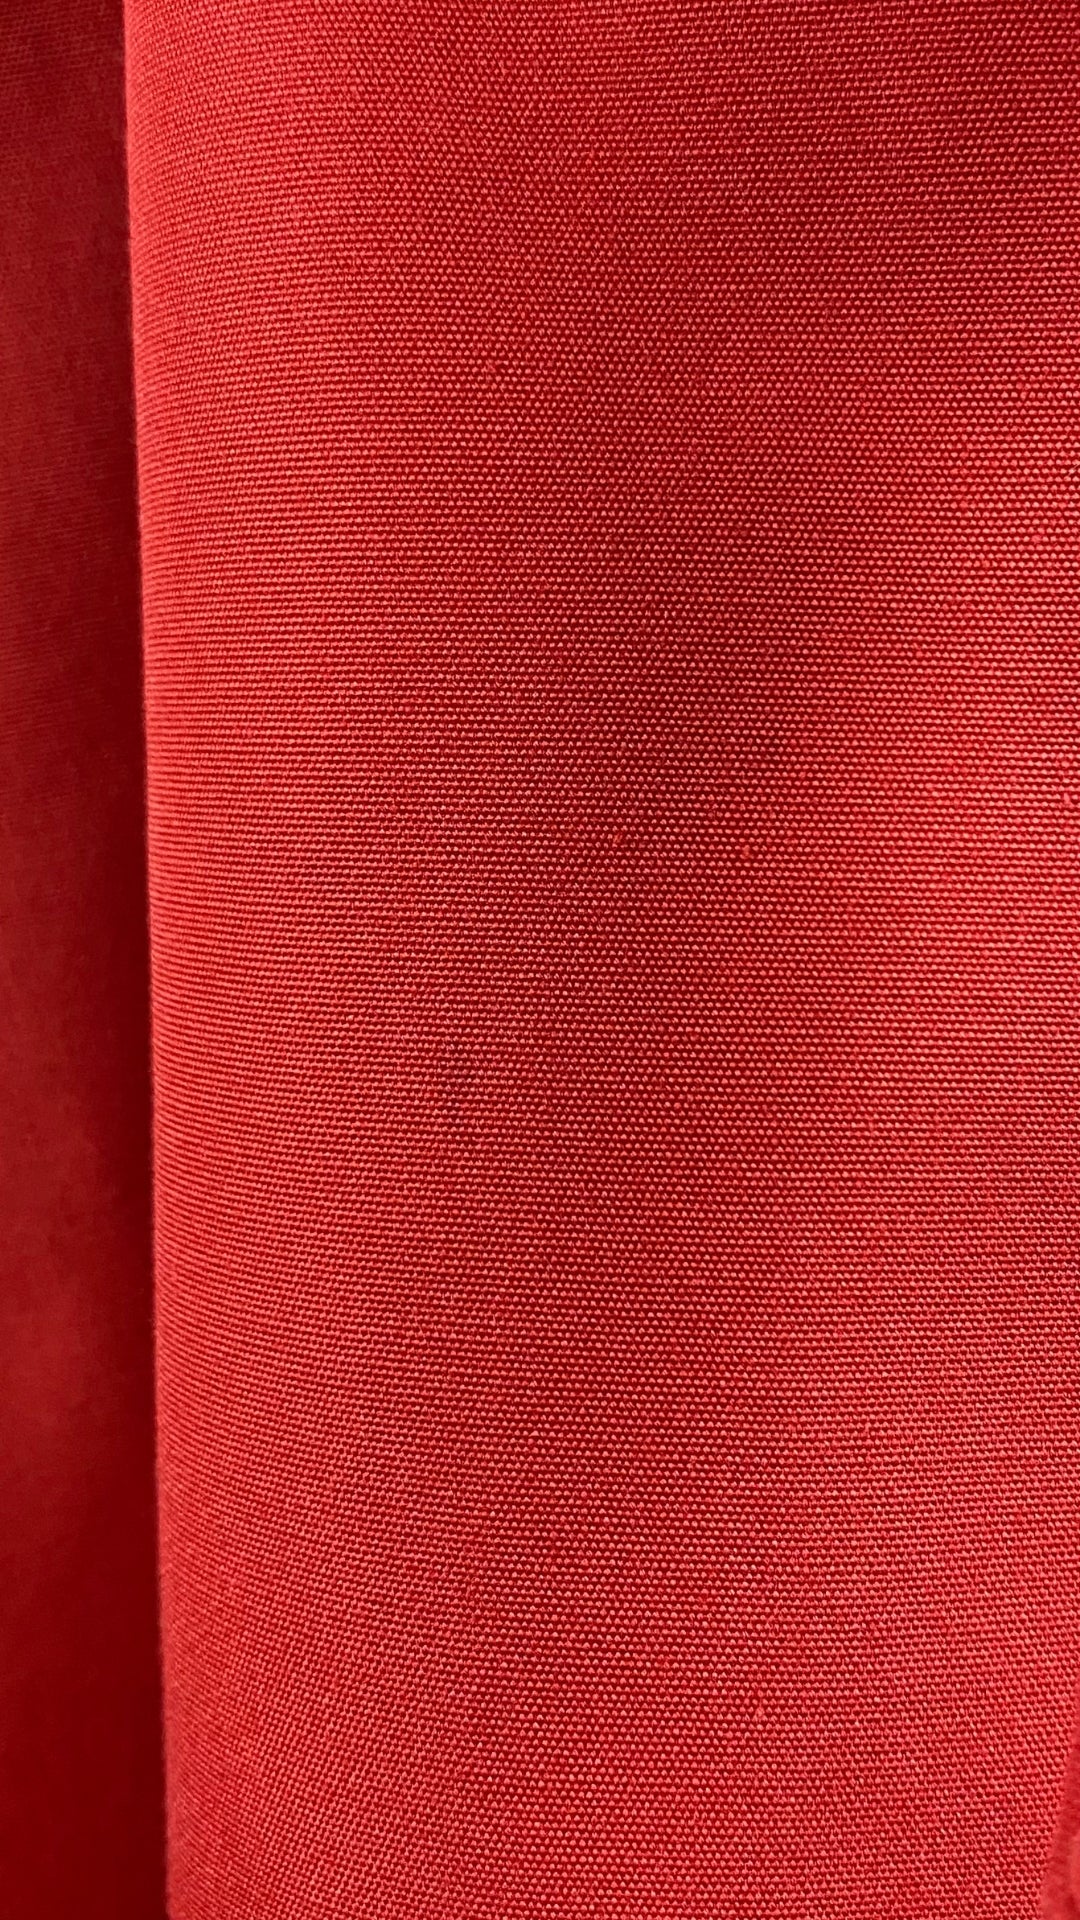 Manteau long vintage style trench rouge, taille small/medium. Vue de petite ombre dans le tissu.